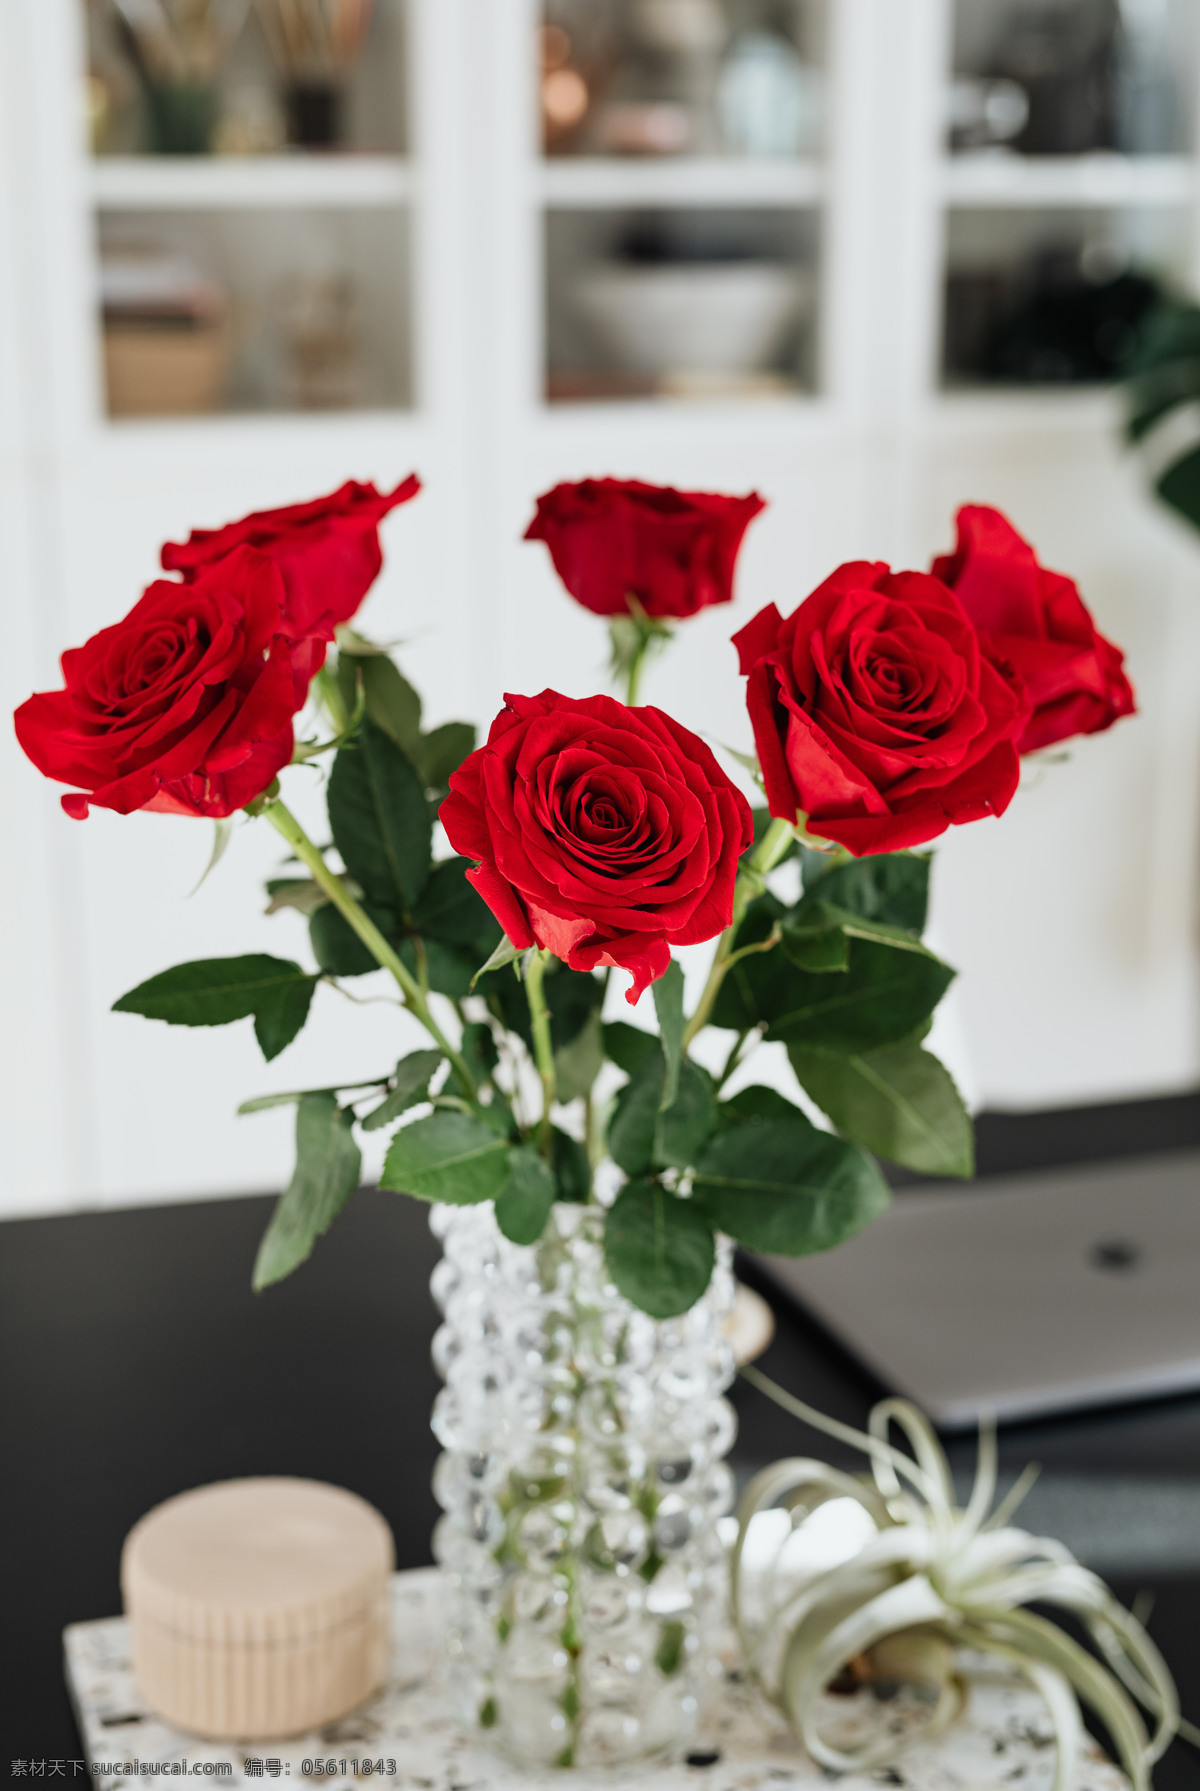 漂亮的红玫瑰 玫瑰花 花朵 花束 情人节 浪漫 表白 爱情 红玫瑰 玫瑰素材 一束花 花瓣 送花 结婚 求婚 求爱 追求 花瓶 生活百科 生活素材